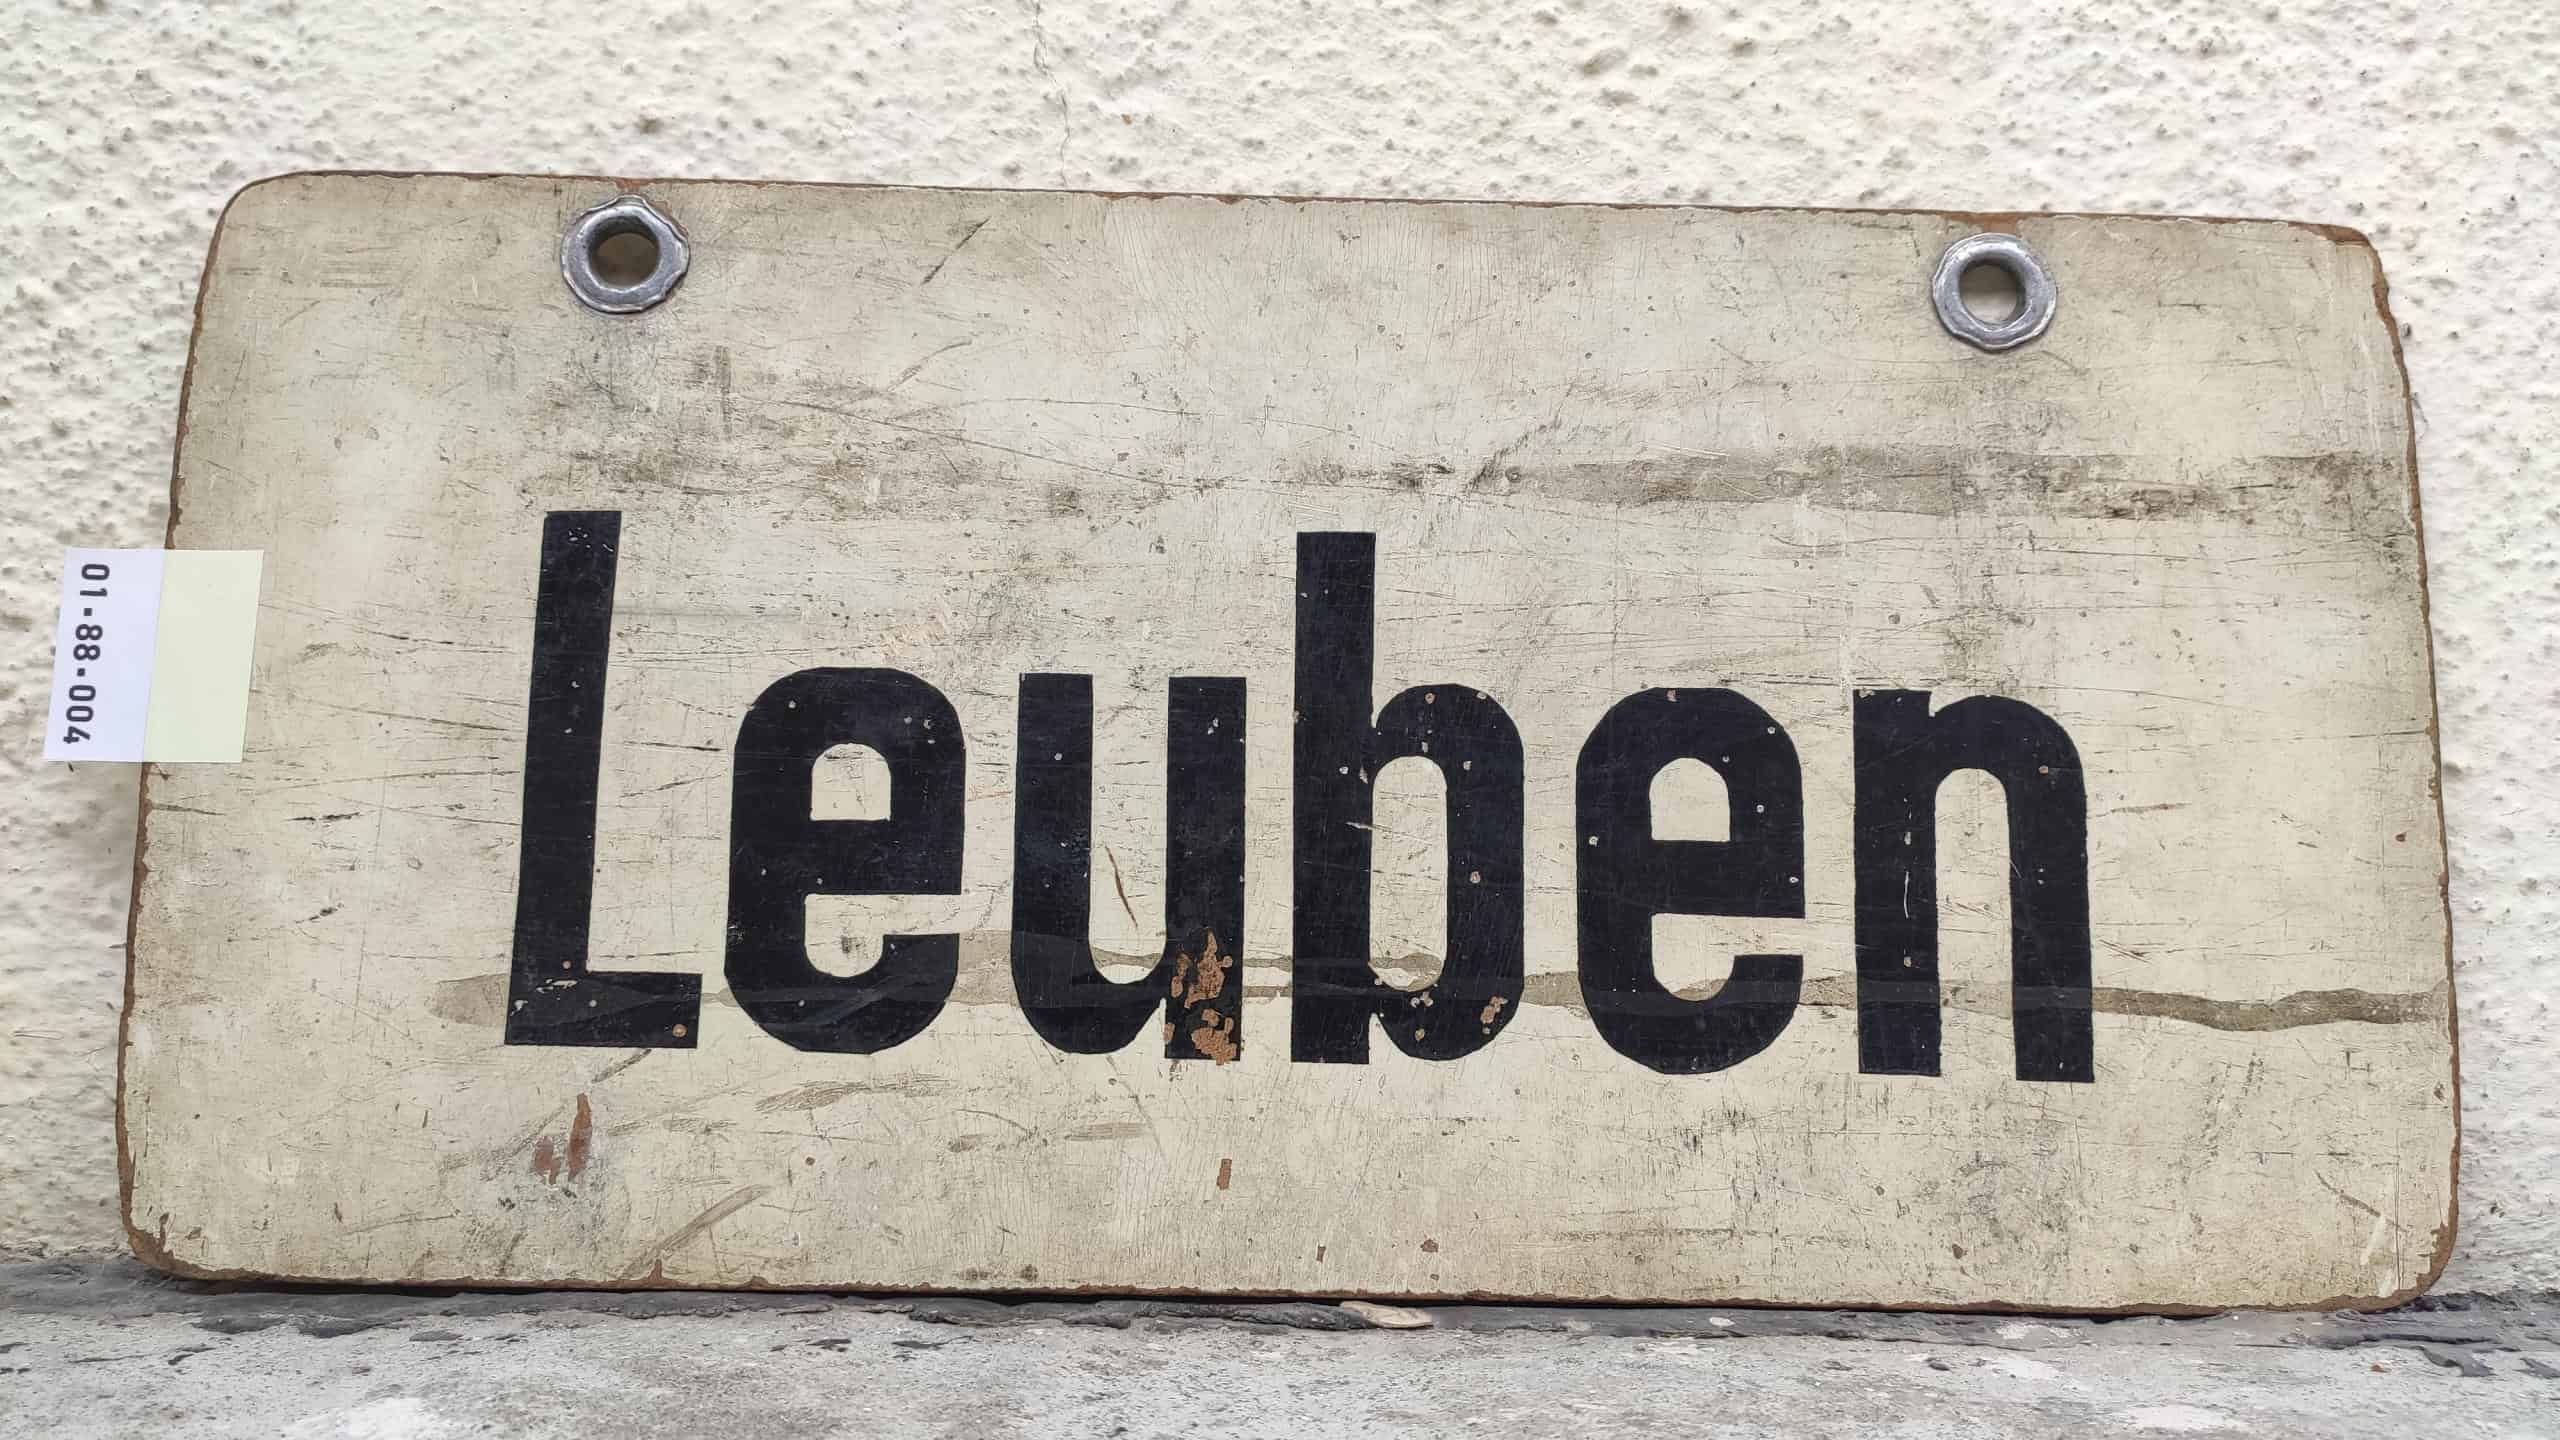 Leuben